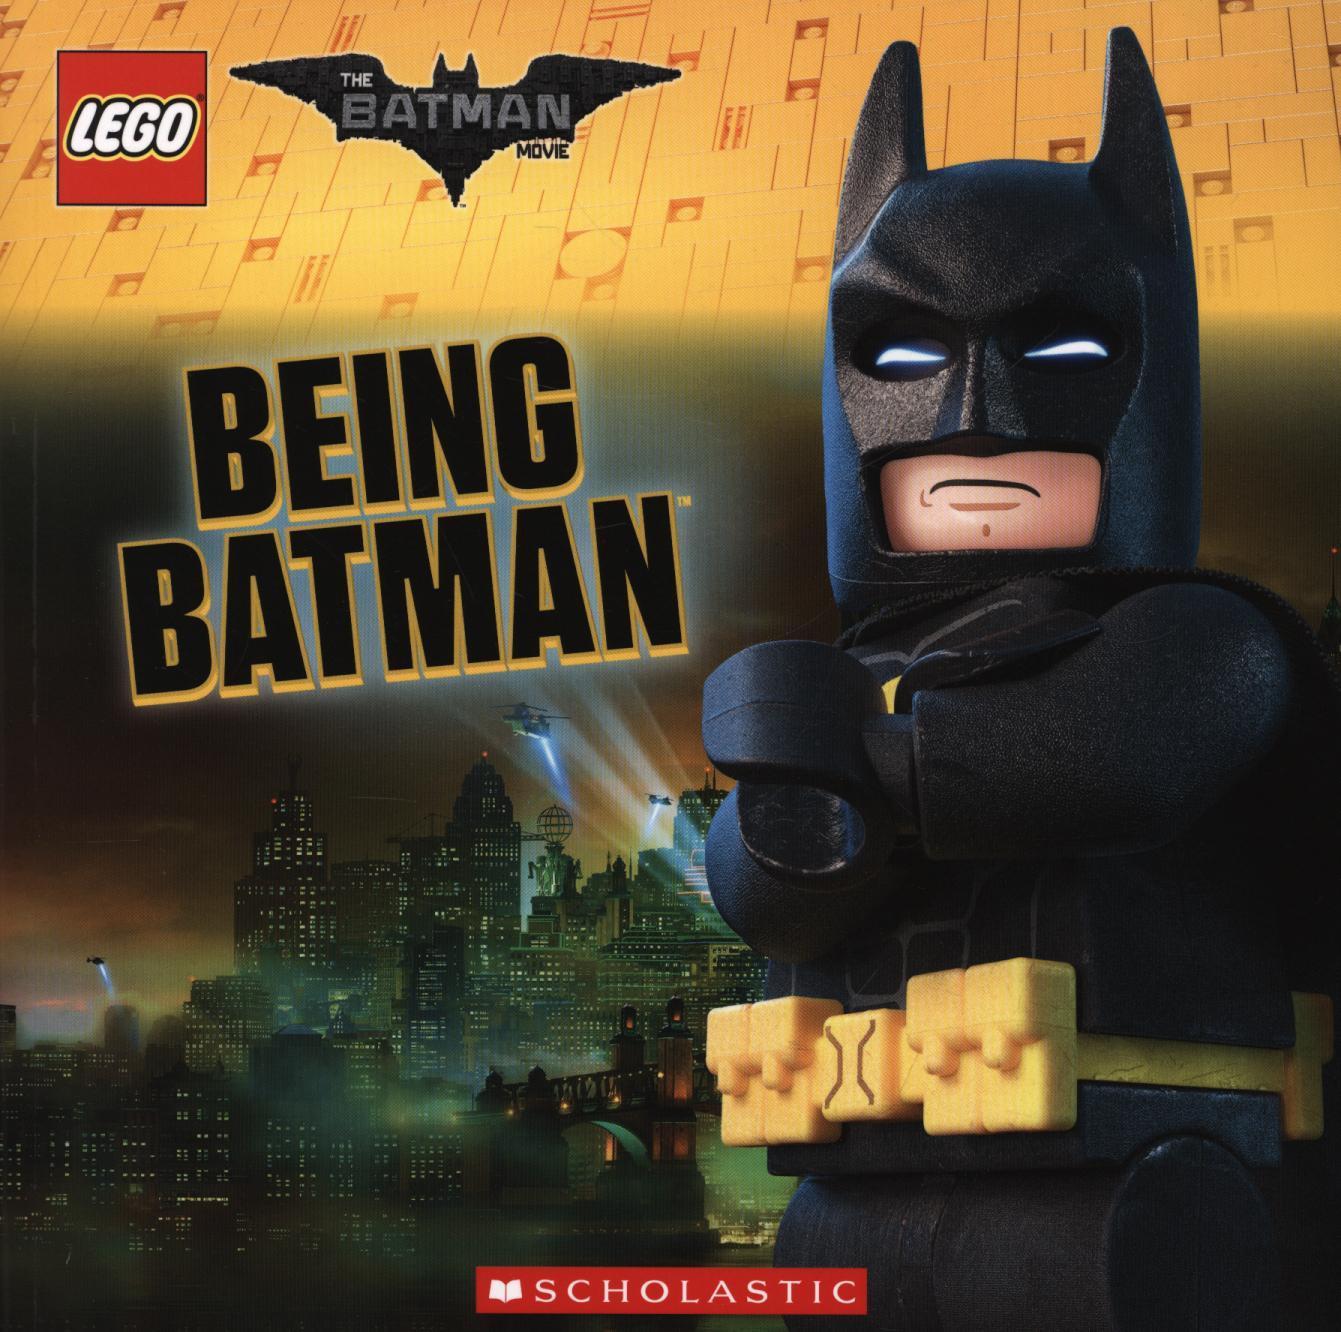 LEGO Batman Movie: Being Batman